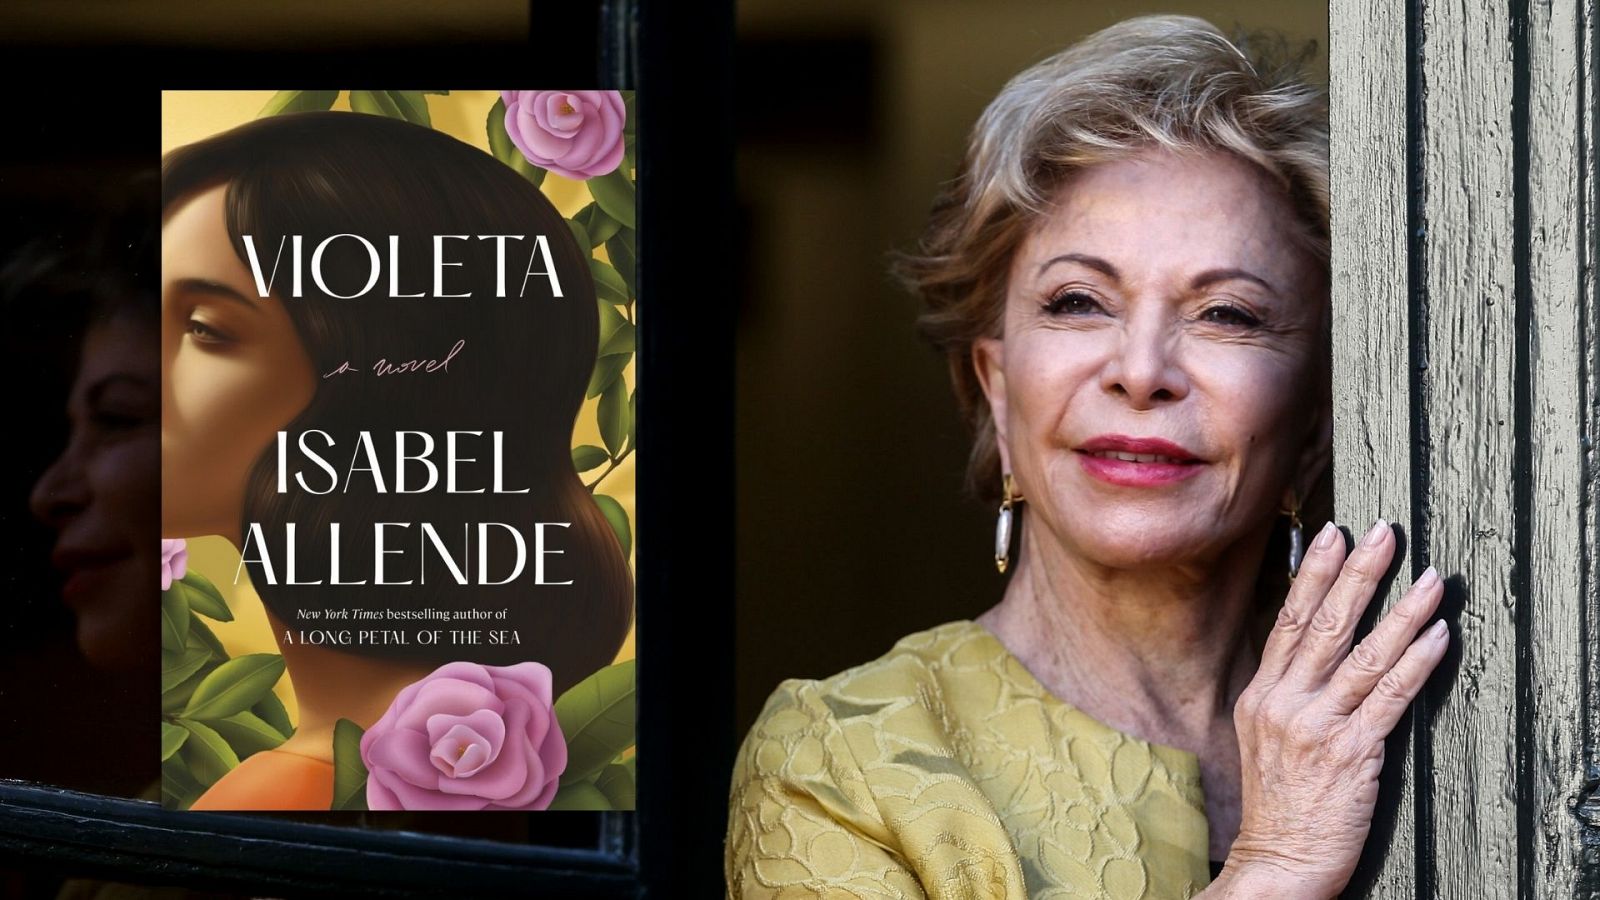 Las mañanas de RNE con Pepa Fernández - Lo último de Isabel Allende: "Violeta" - Escuchar ahora